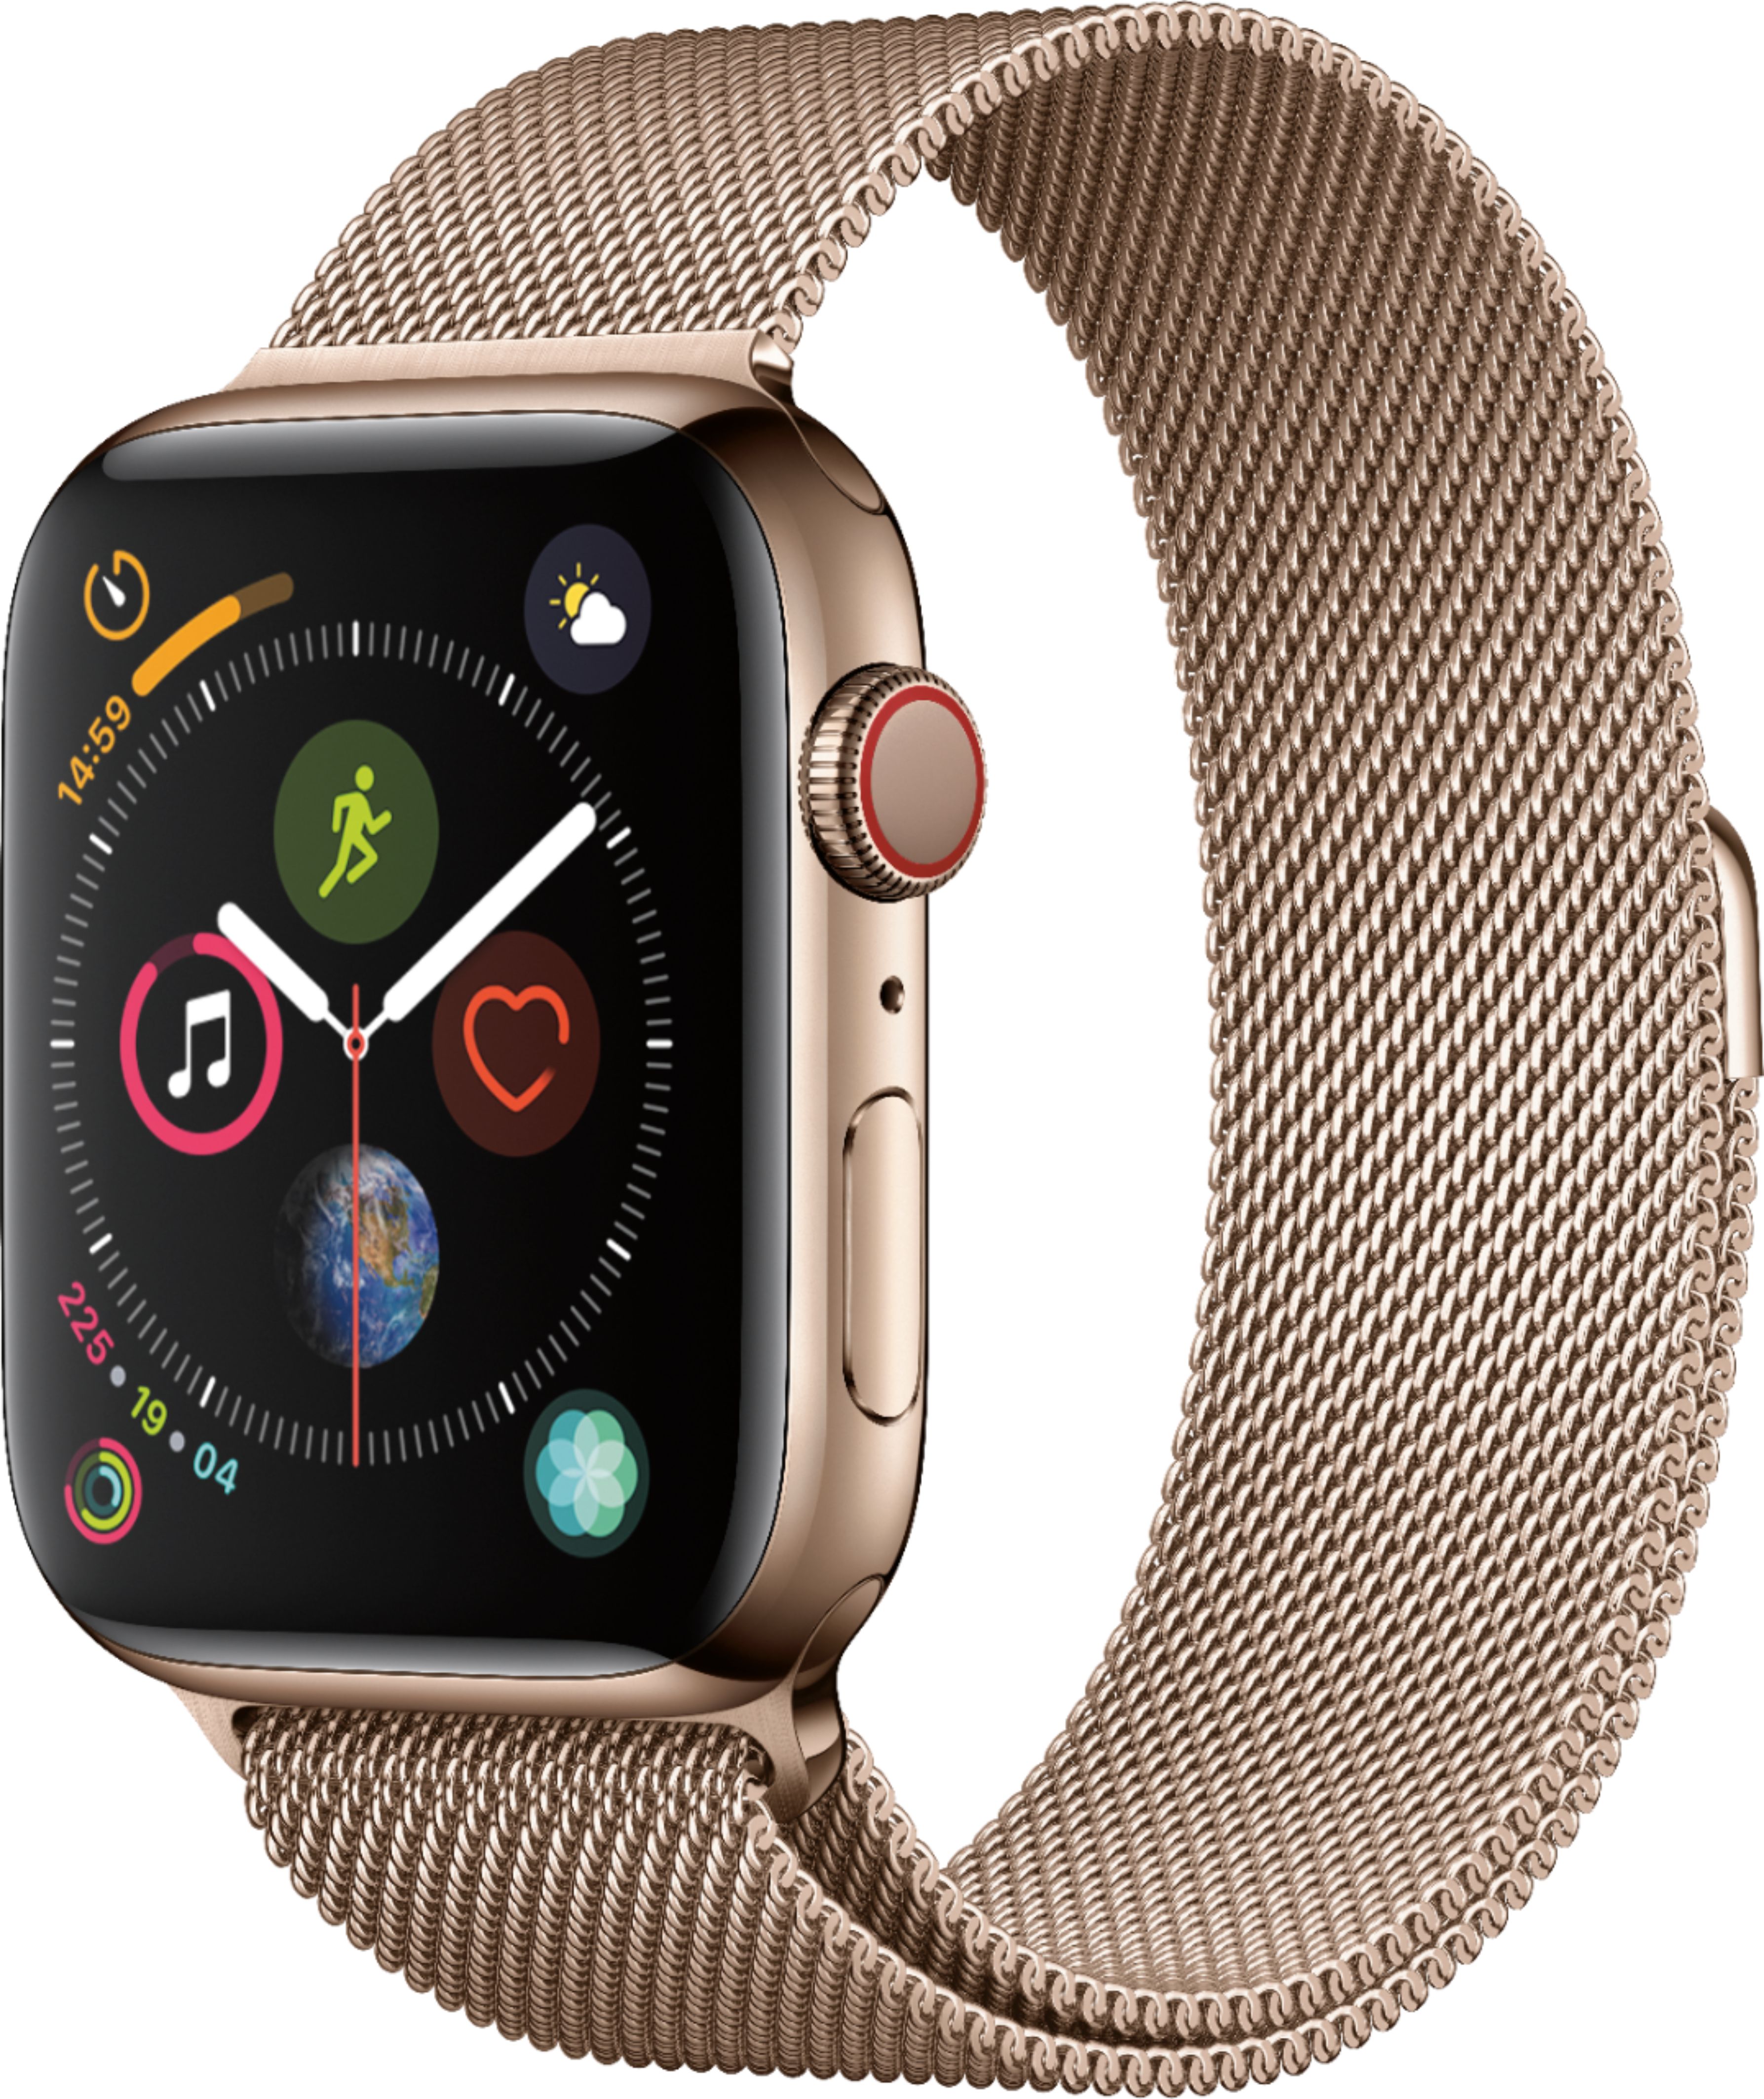 Best Buy: Apple Watch Series 4 (GPS + 